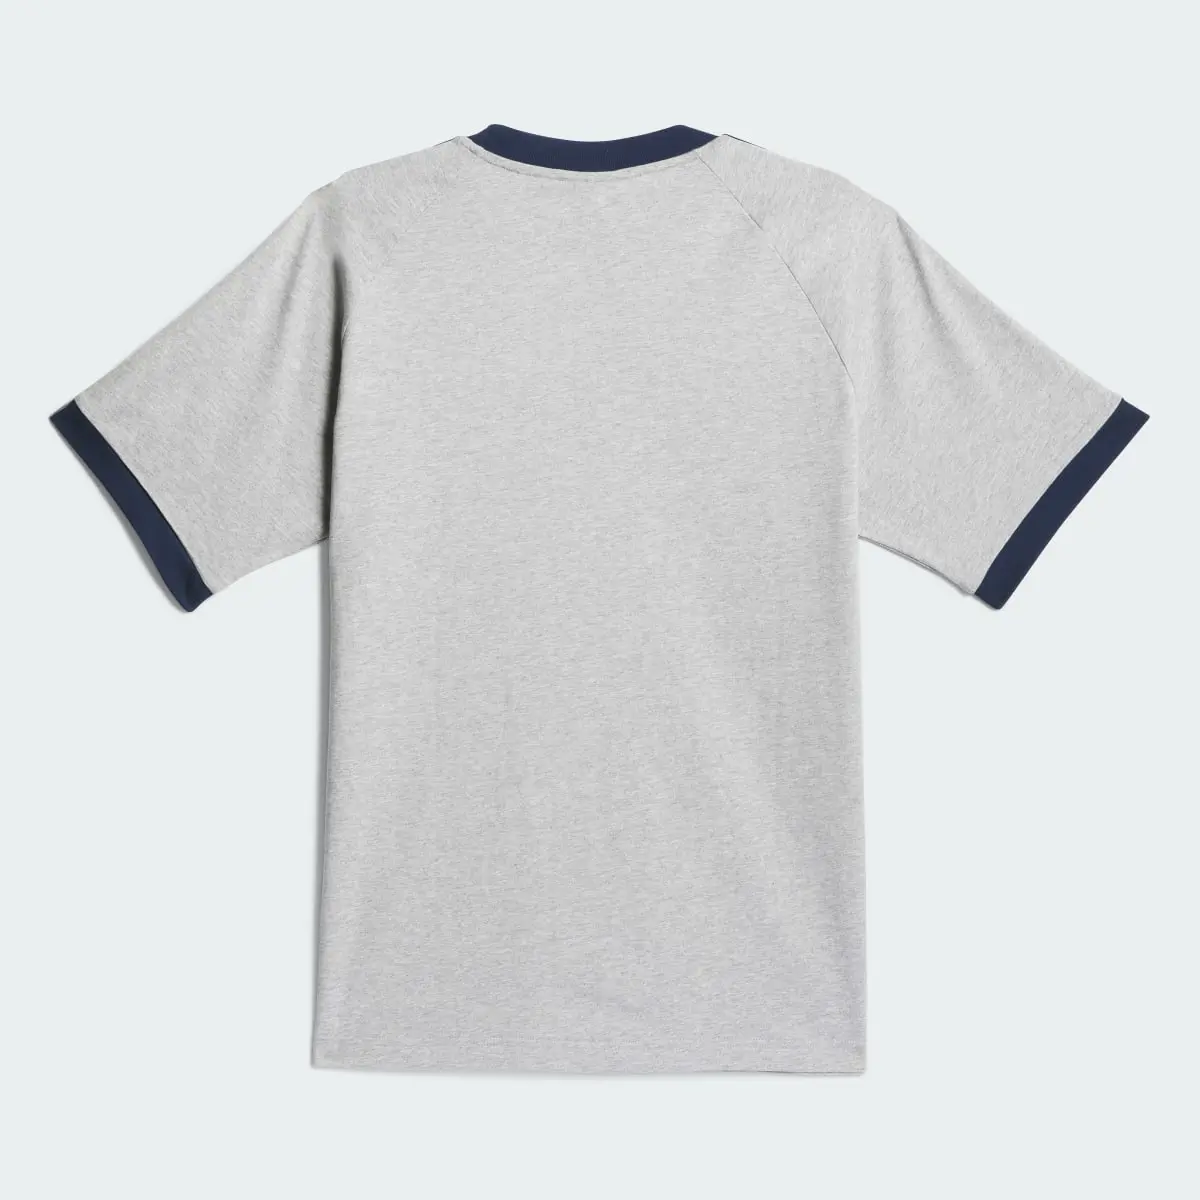 Adidas T-shirt classique Pop. 3